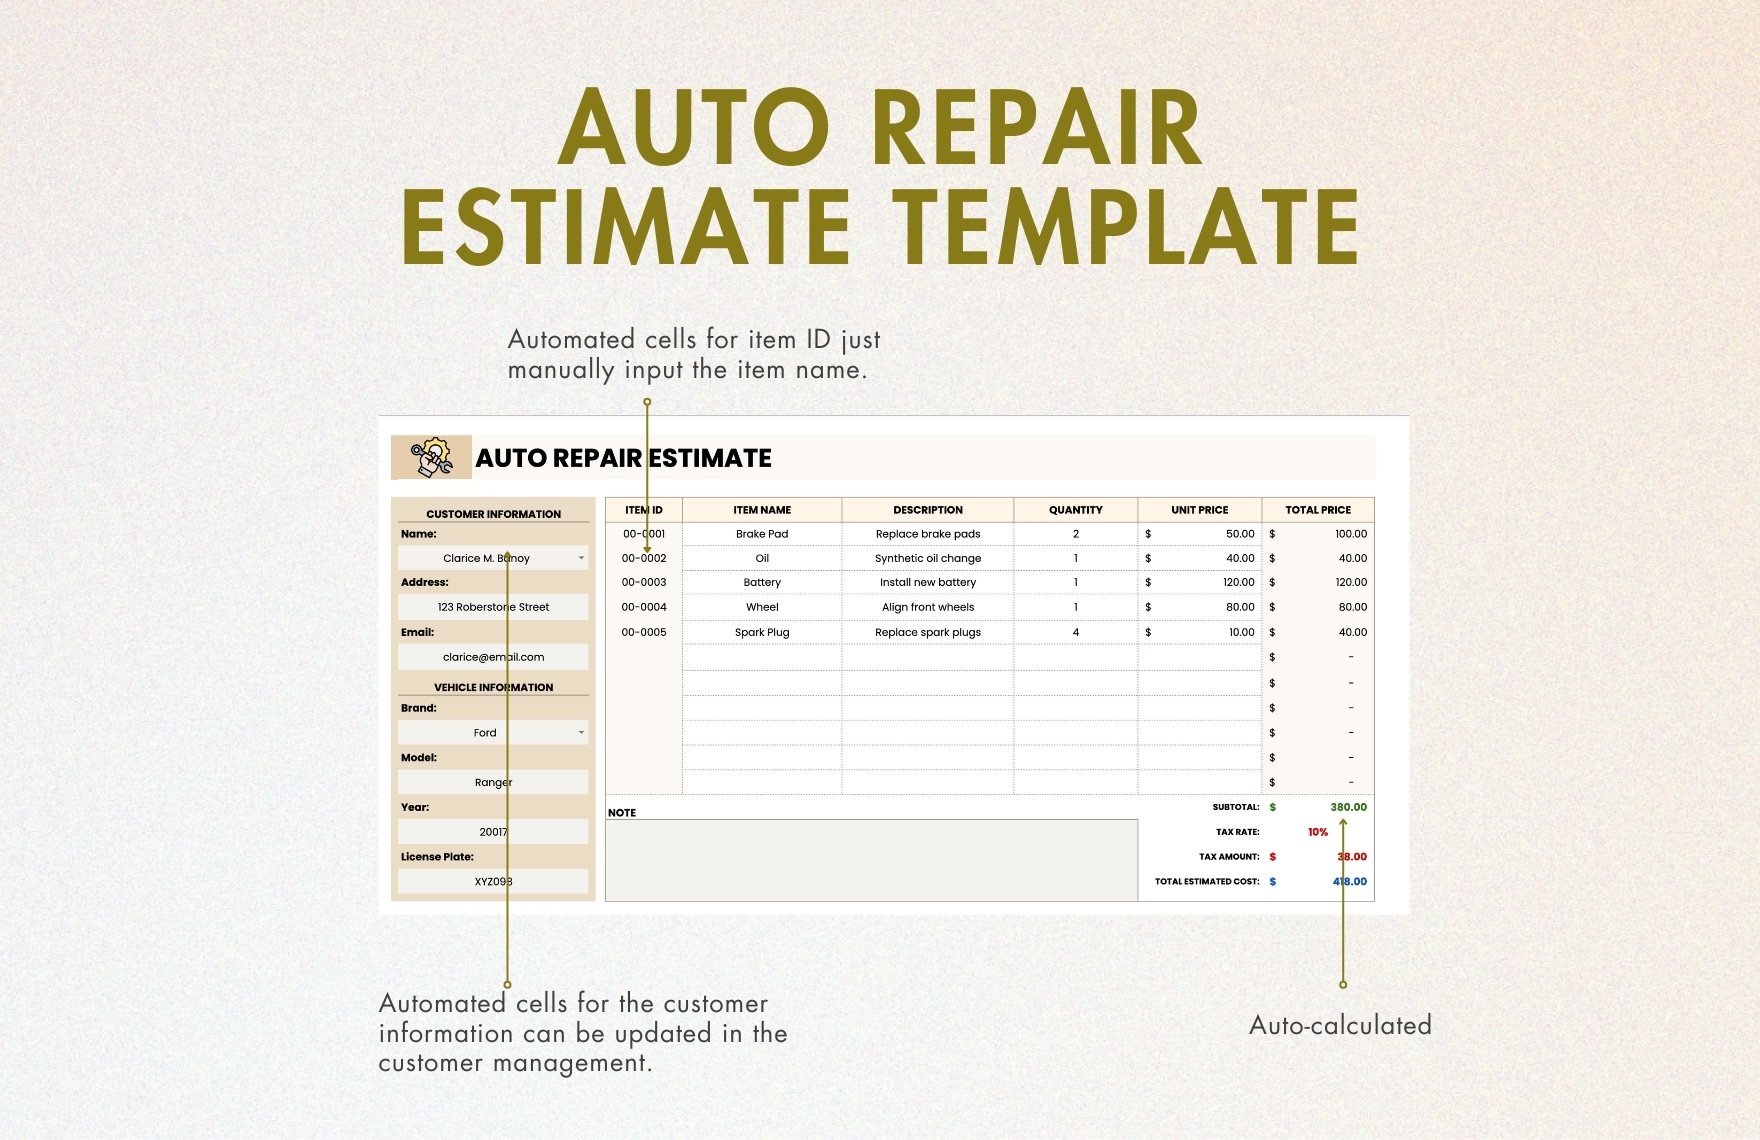 Auto Repair Estimate Template